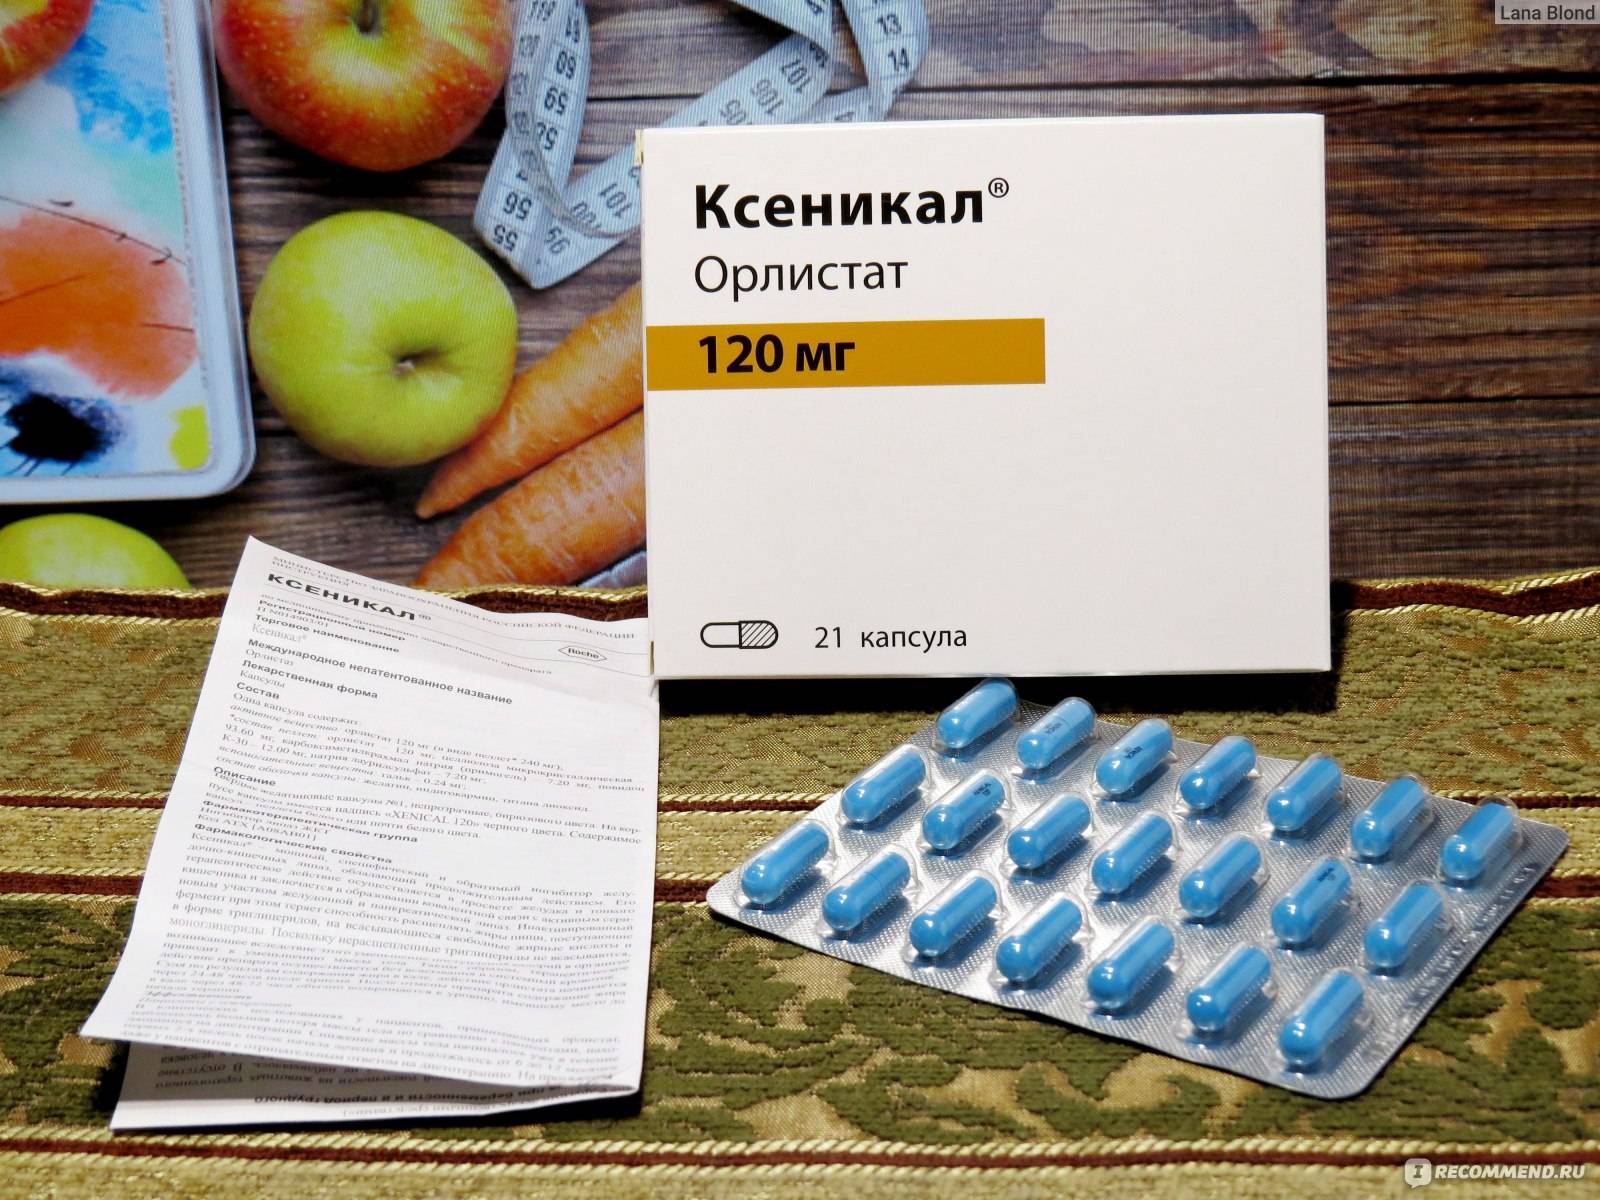 Ксеникал отзывы - препараты для похудения - первый независимый сайт отзывов россии